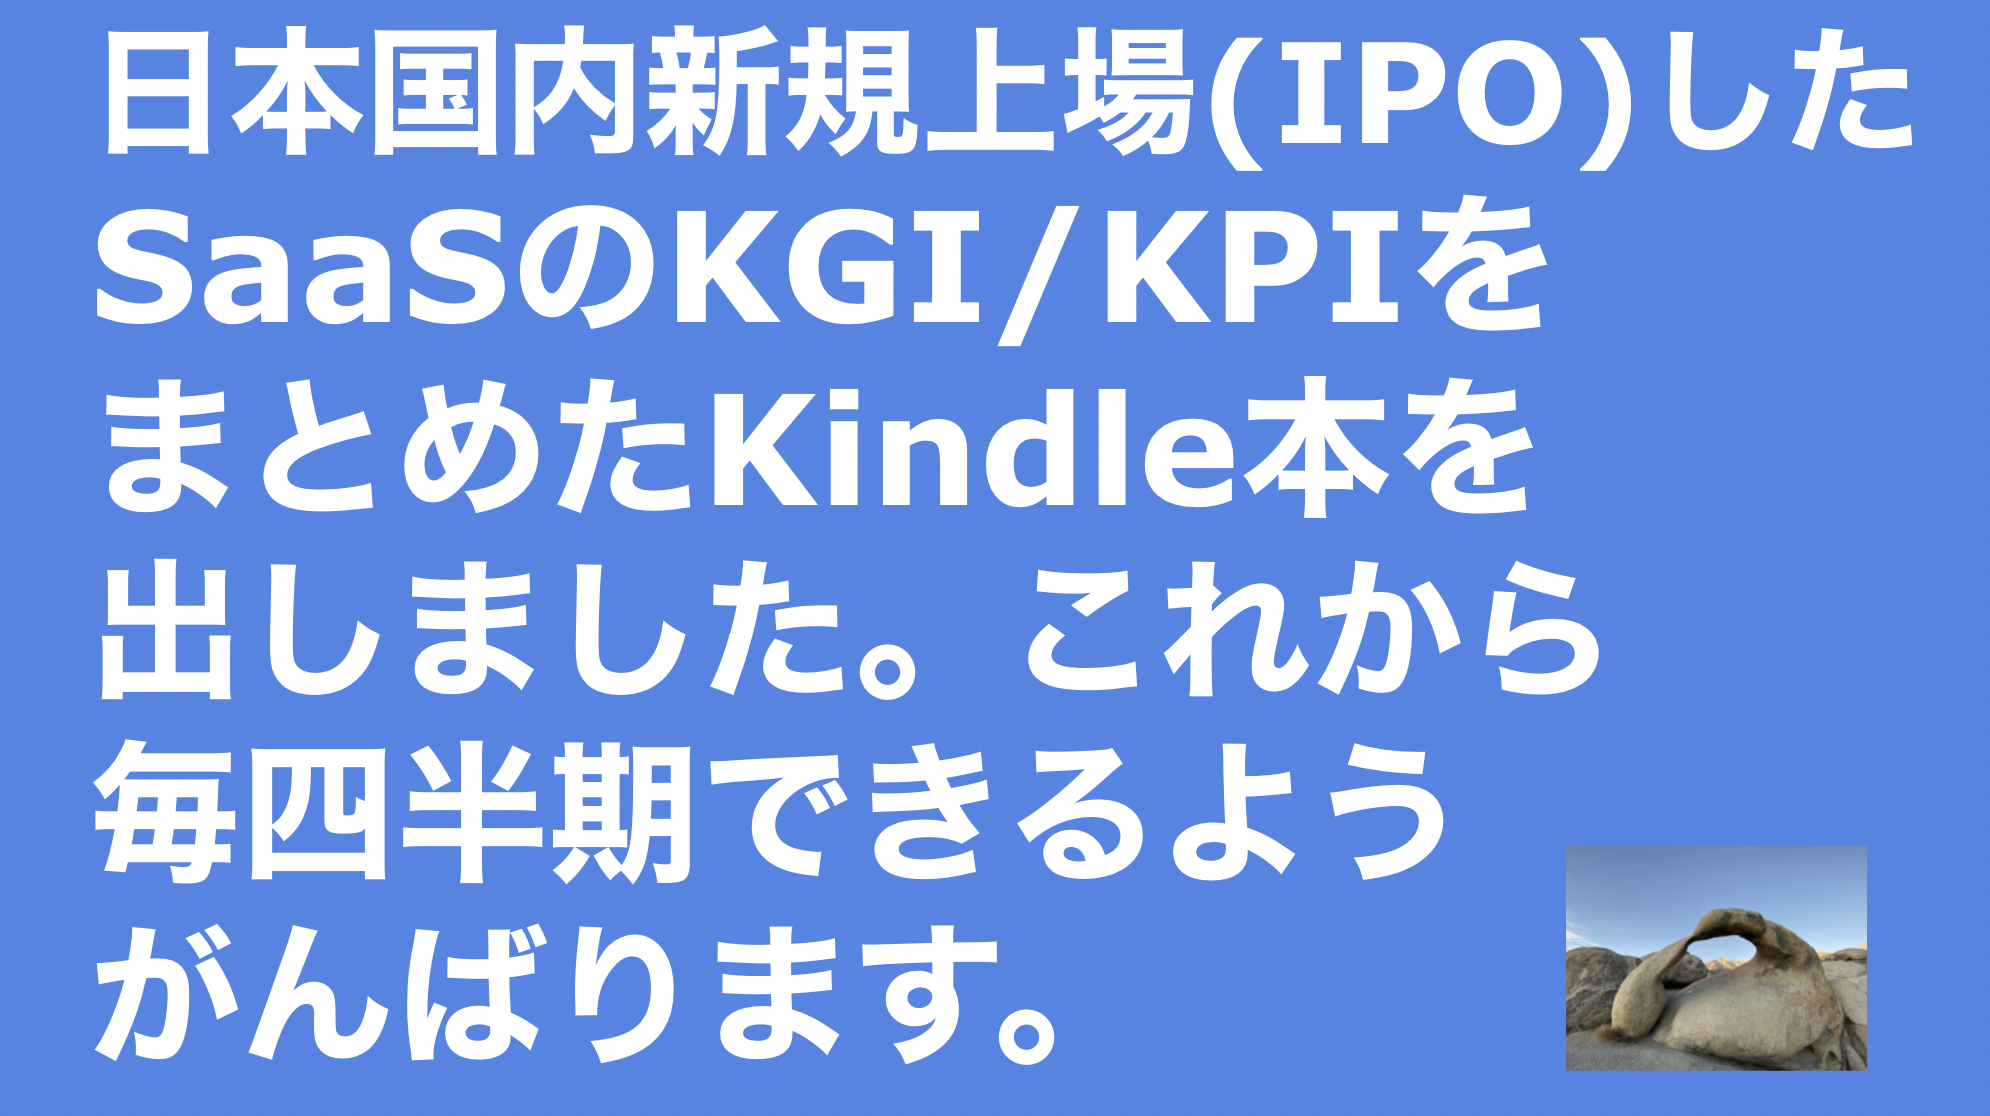 saaslife_日本国内新規上場(IPO)したSaaSのKGI/KPIをまとめたKindle本を出しました。これから毎四半期できるようがんばります.。